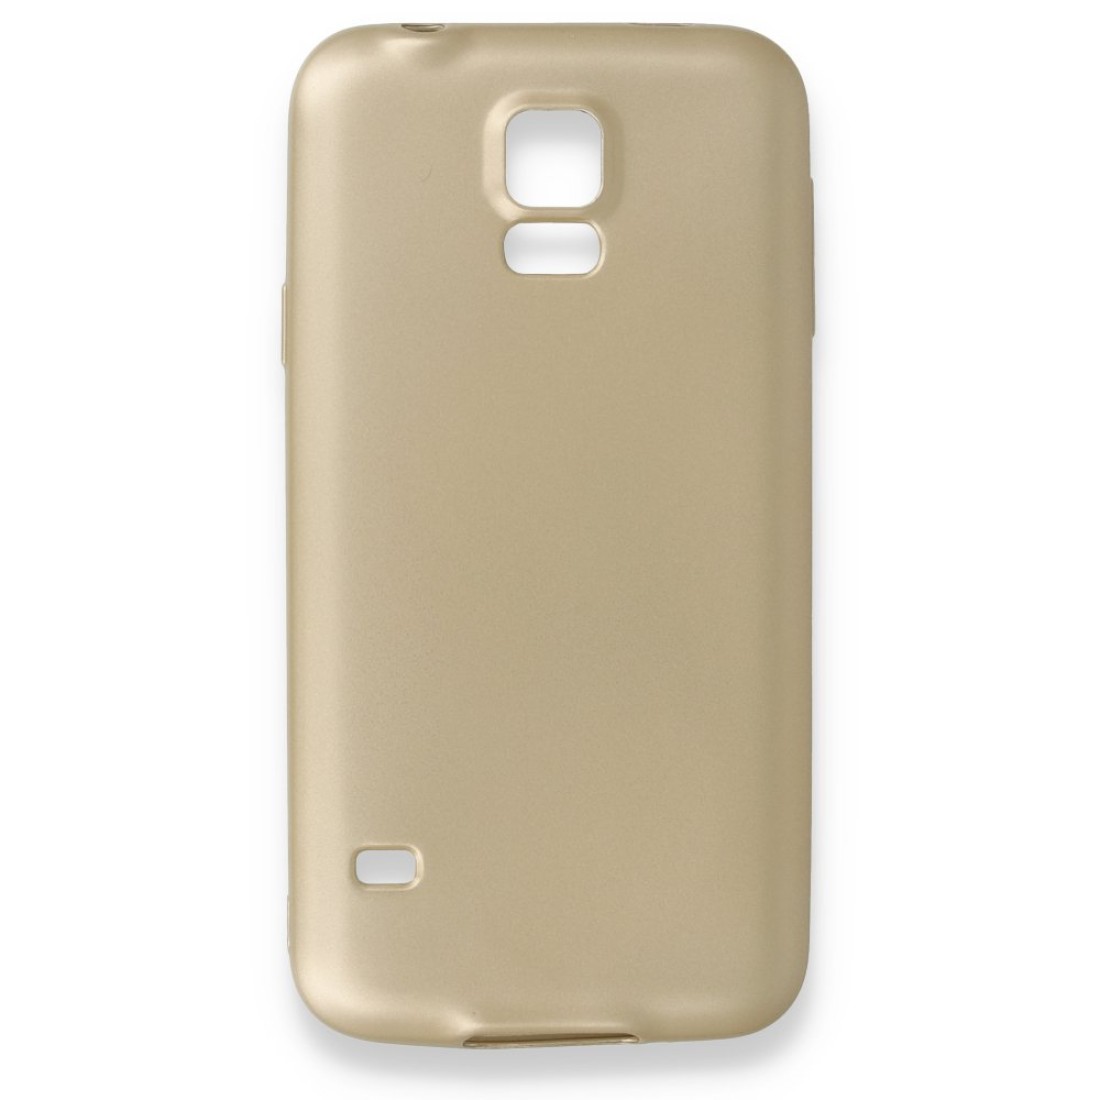 Samsung Galaxy S5 Kılıf Premium Rubber Silikon - Gold